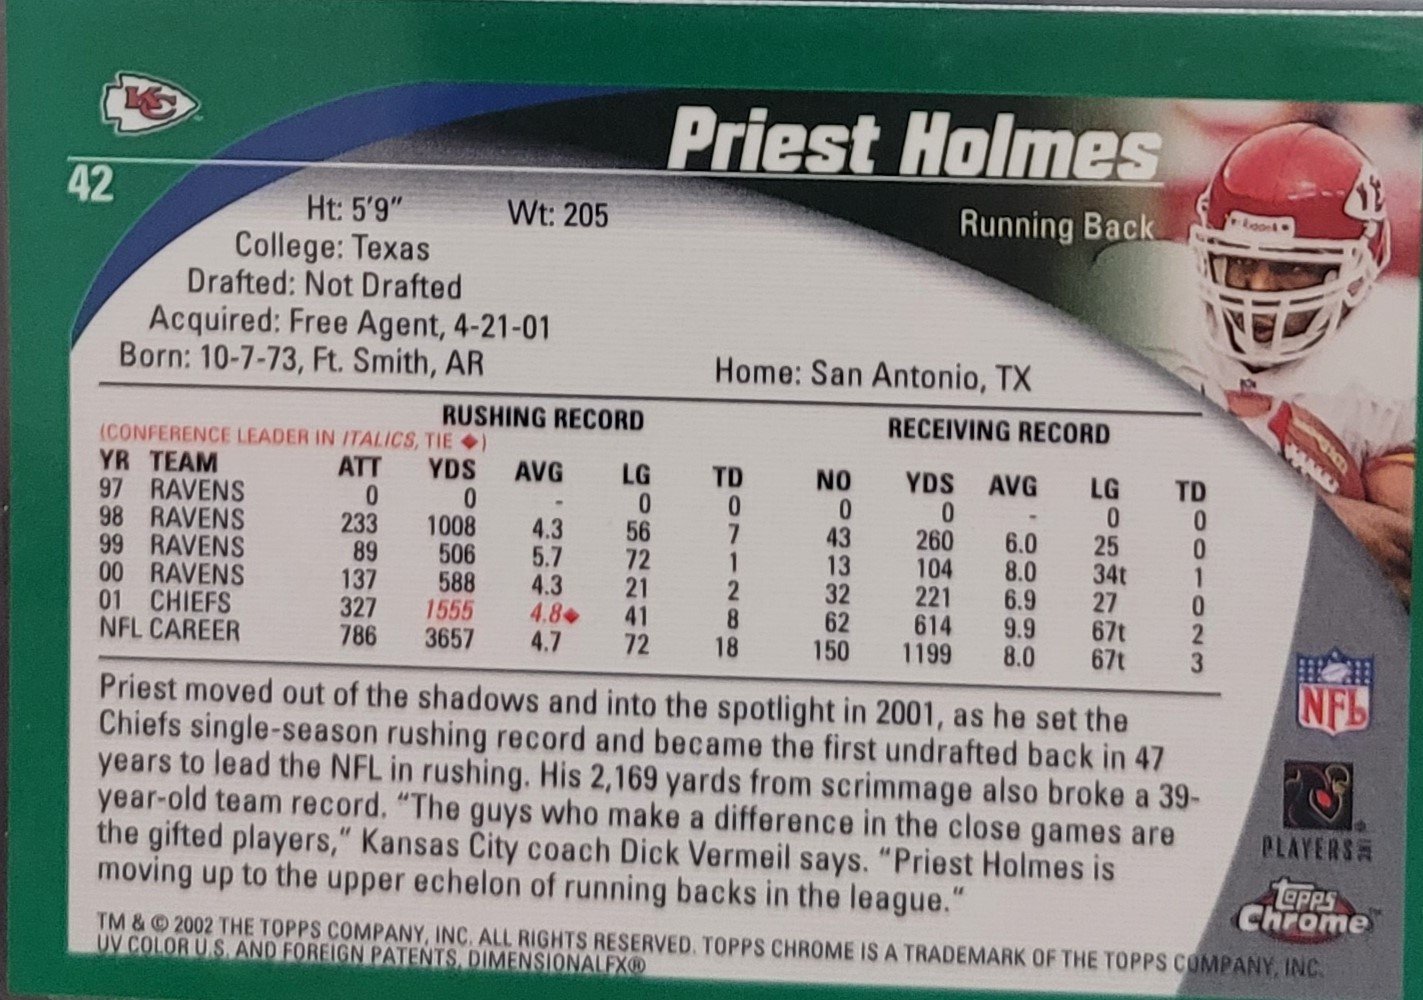 1995 Priest Holmes (3).jpg